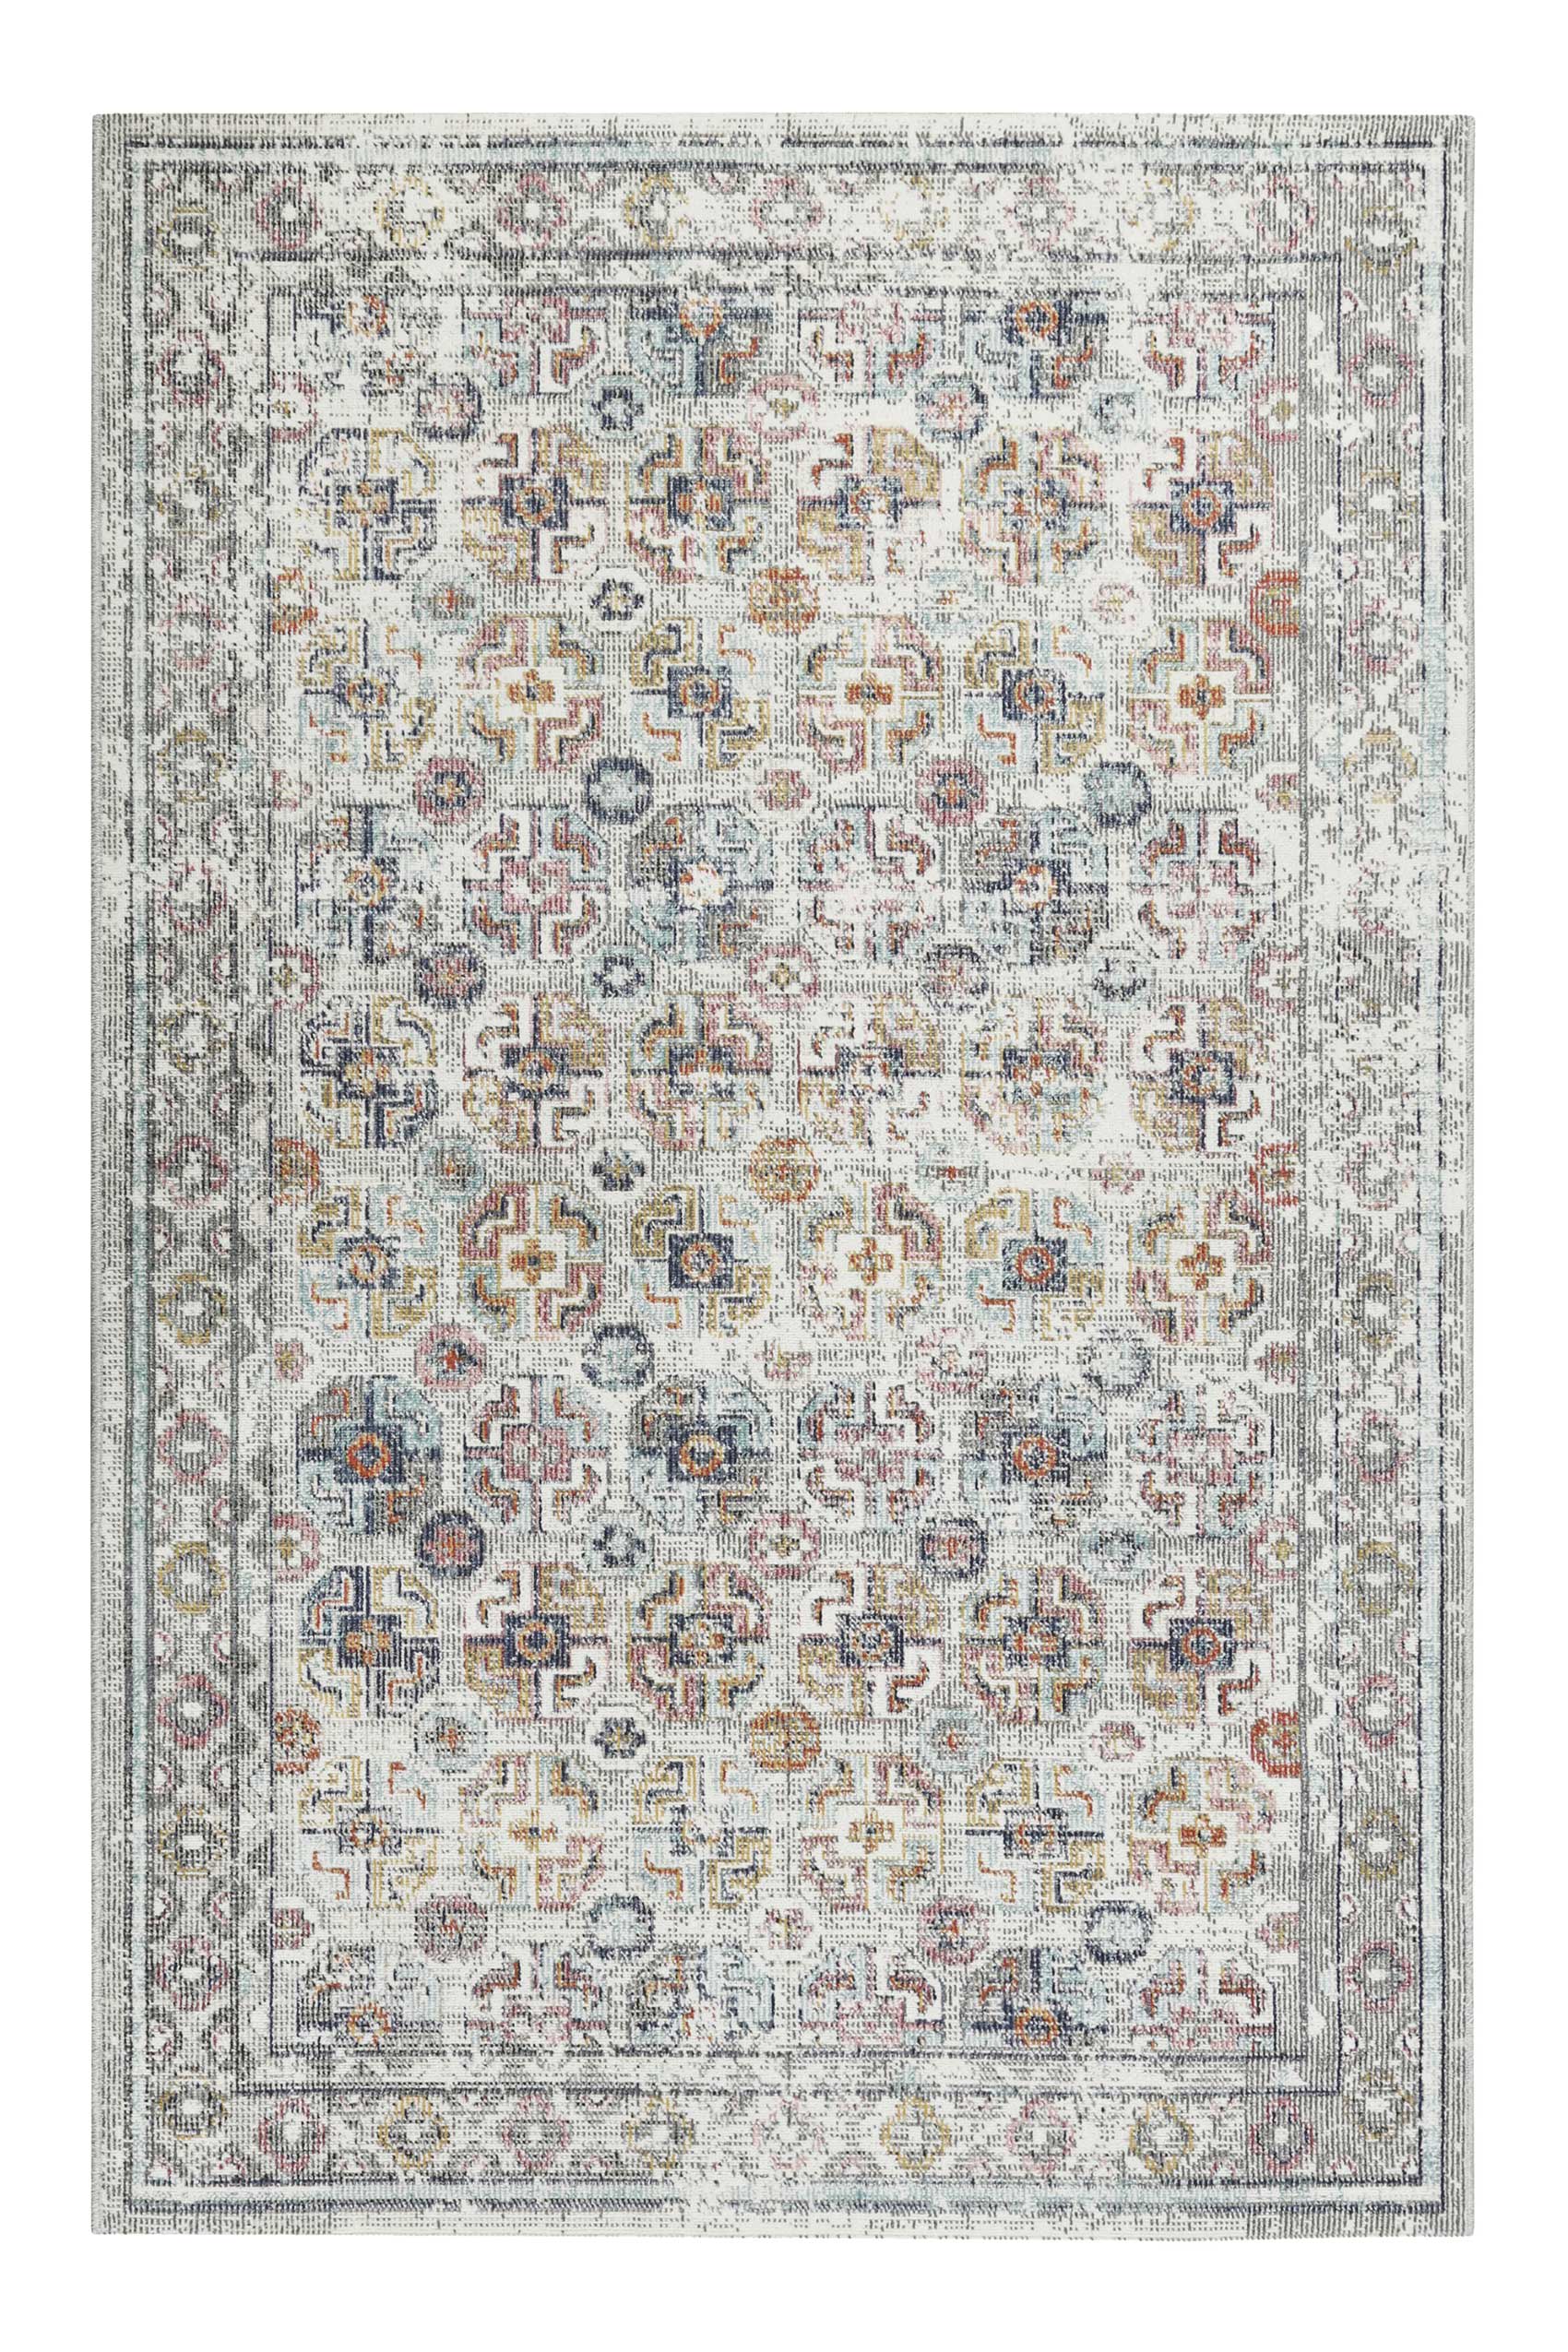 Tappeto etnico per esterni/interni con rilievo multicolore, 160X230 cm  SOLEY